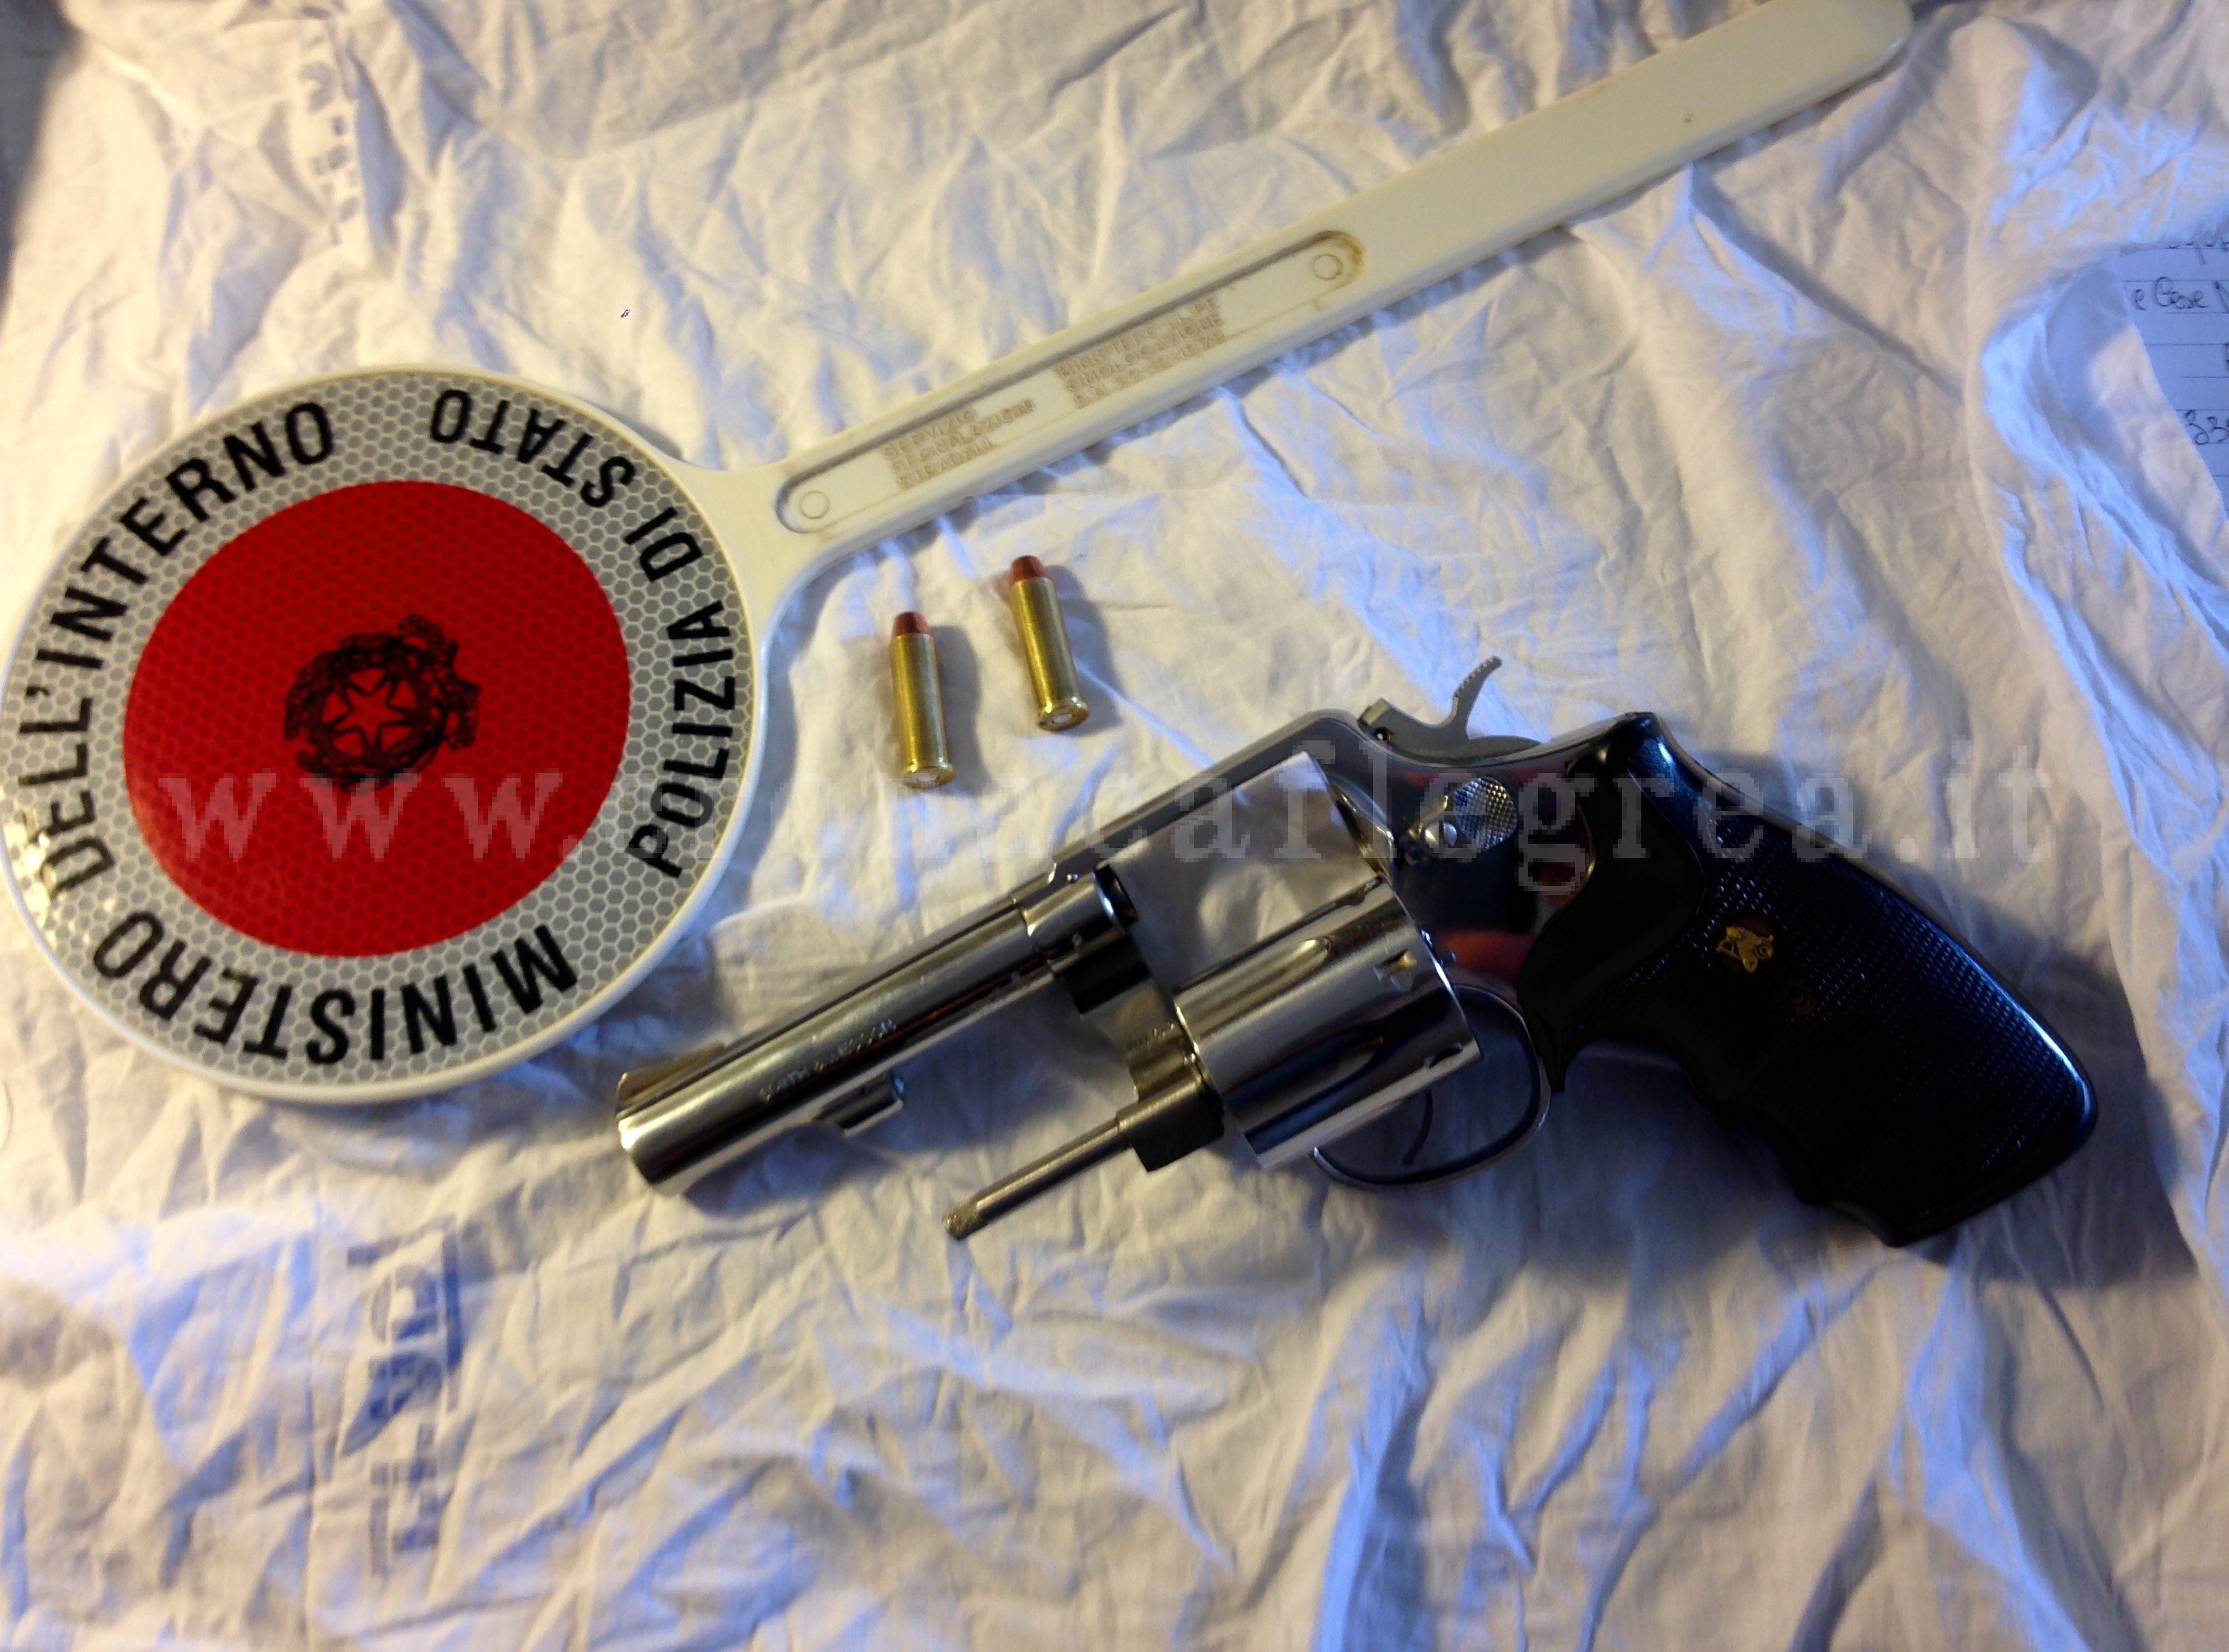 Quattro giovanissimi trovati in possesso di una revolver: arrestati